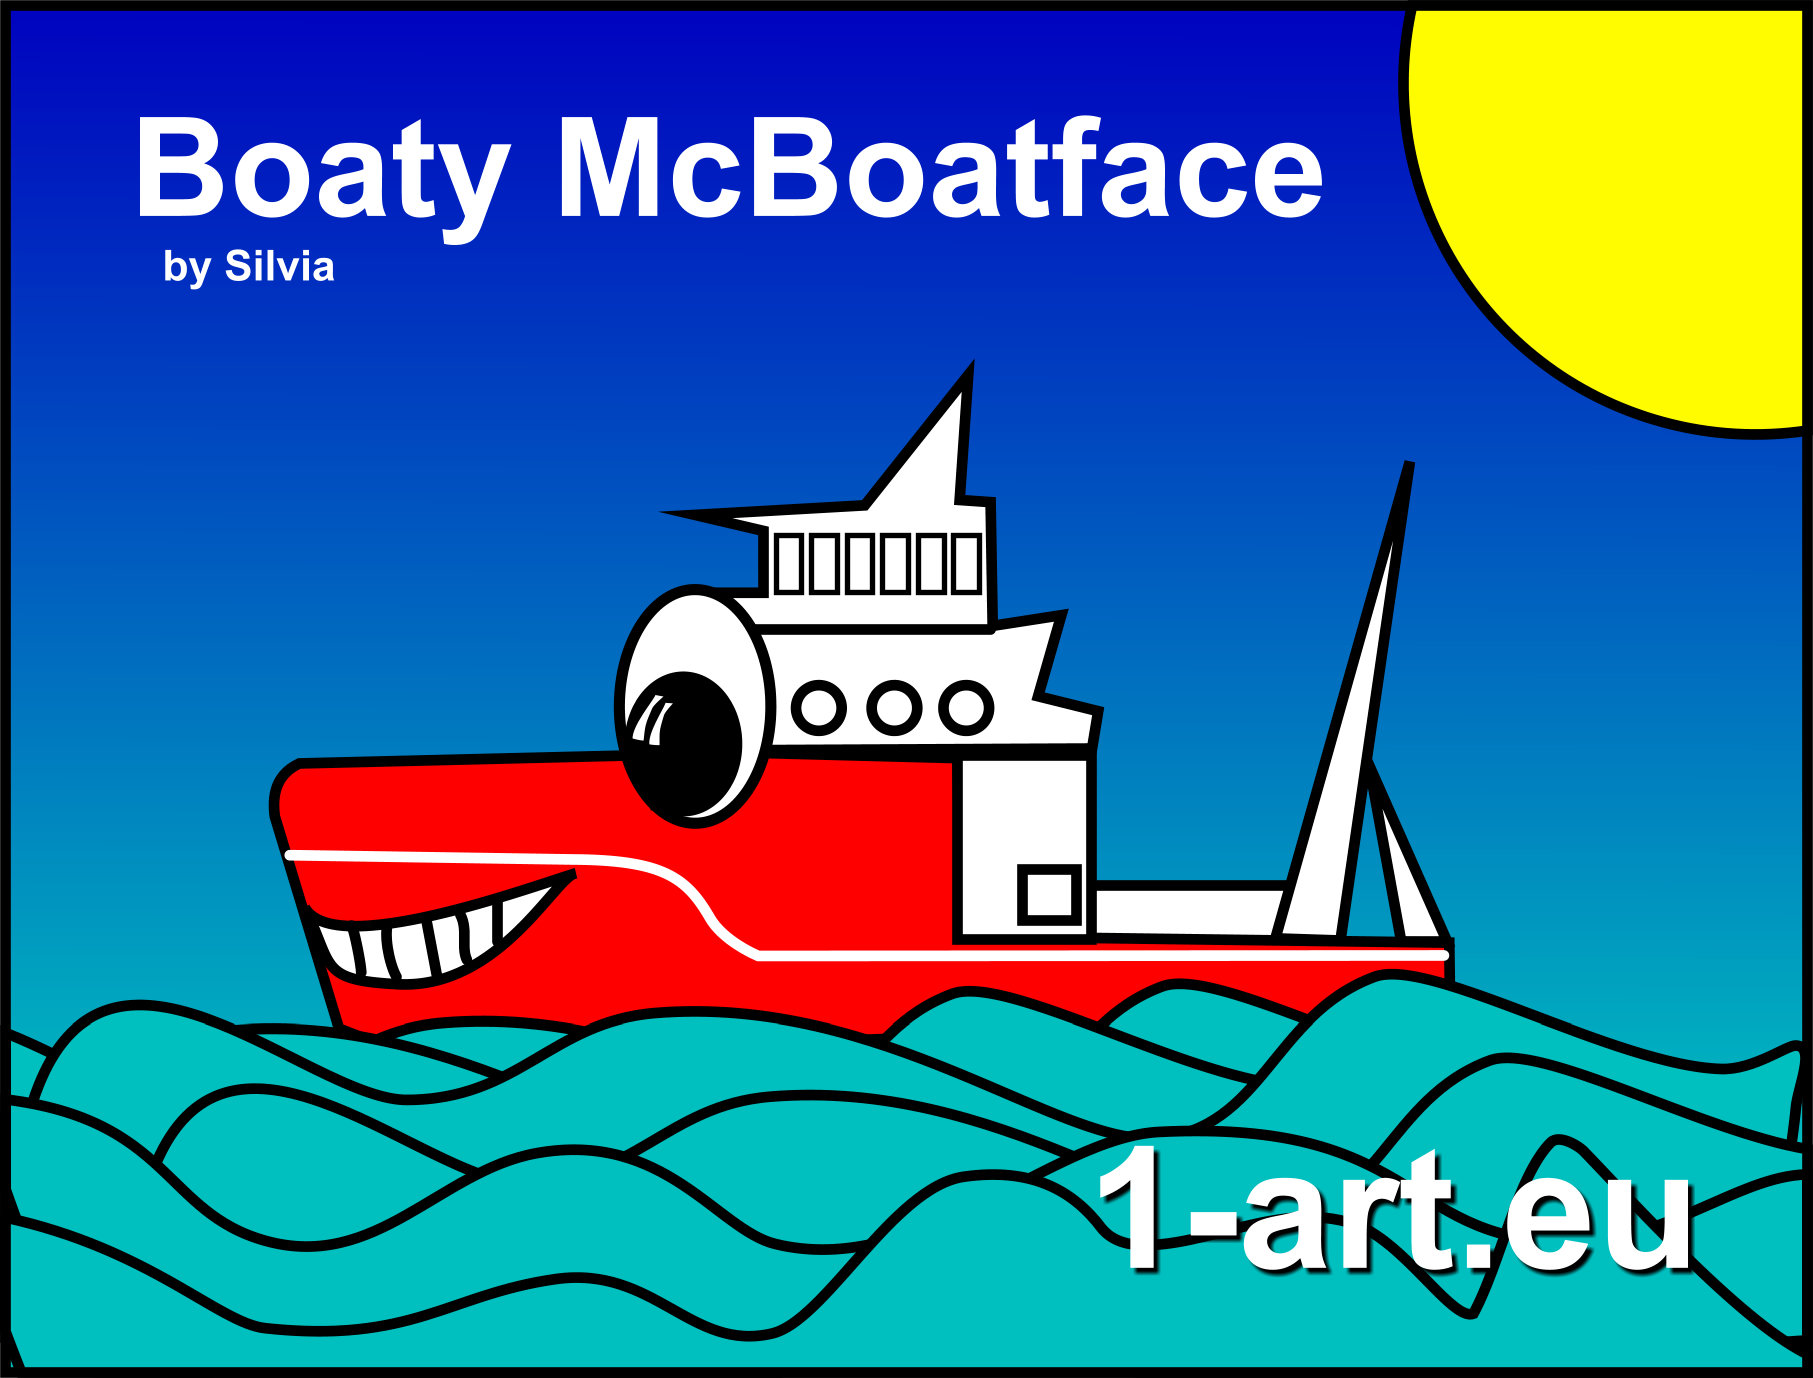 Boaty McBoatface Cartoon by Silvia Hartmann, April 18th, 2016, 15.19